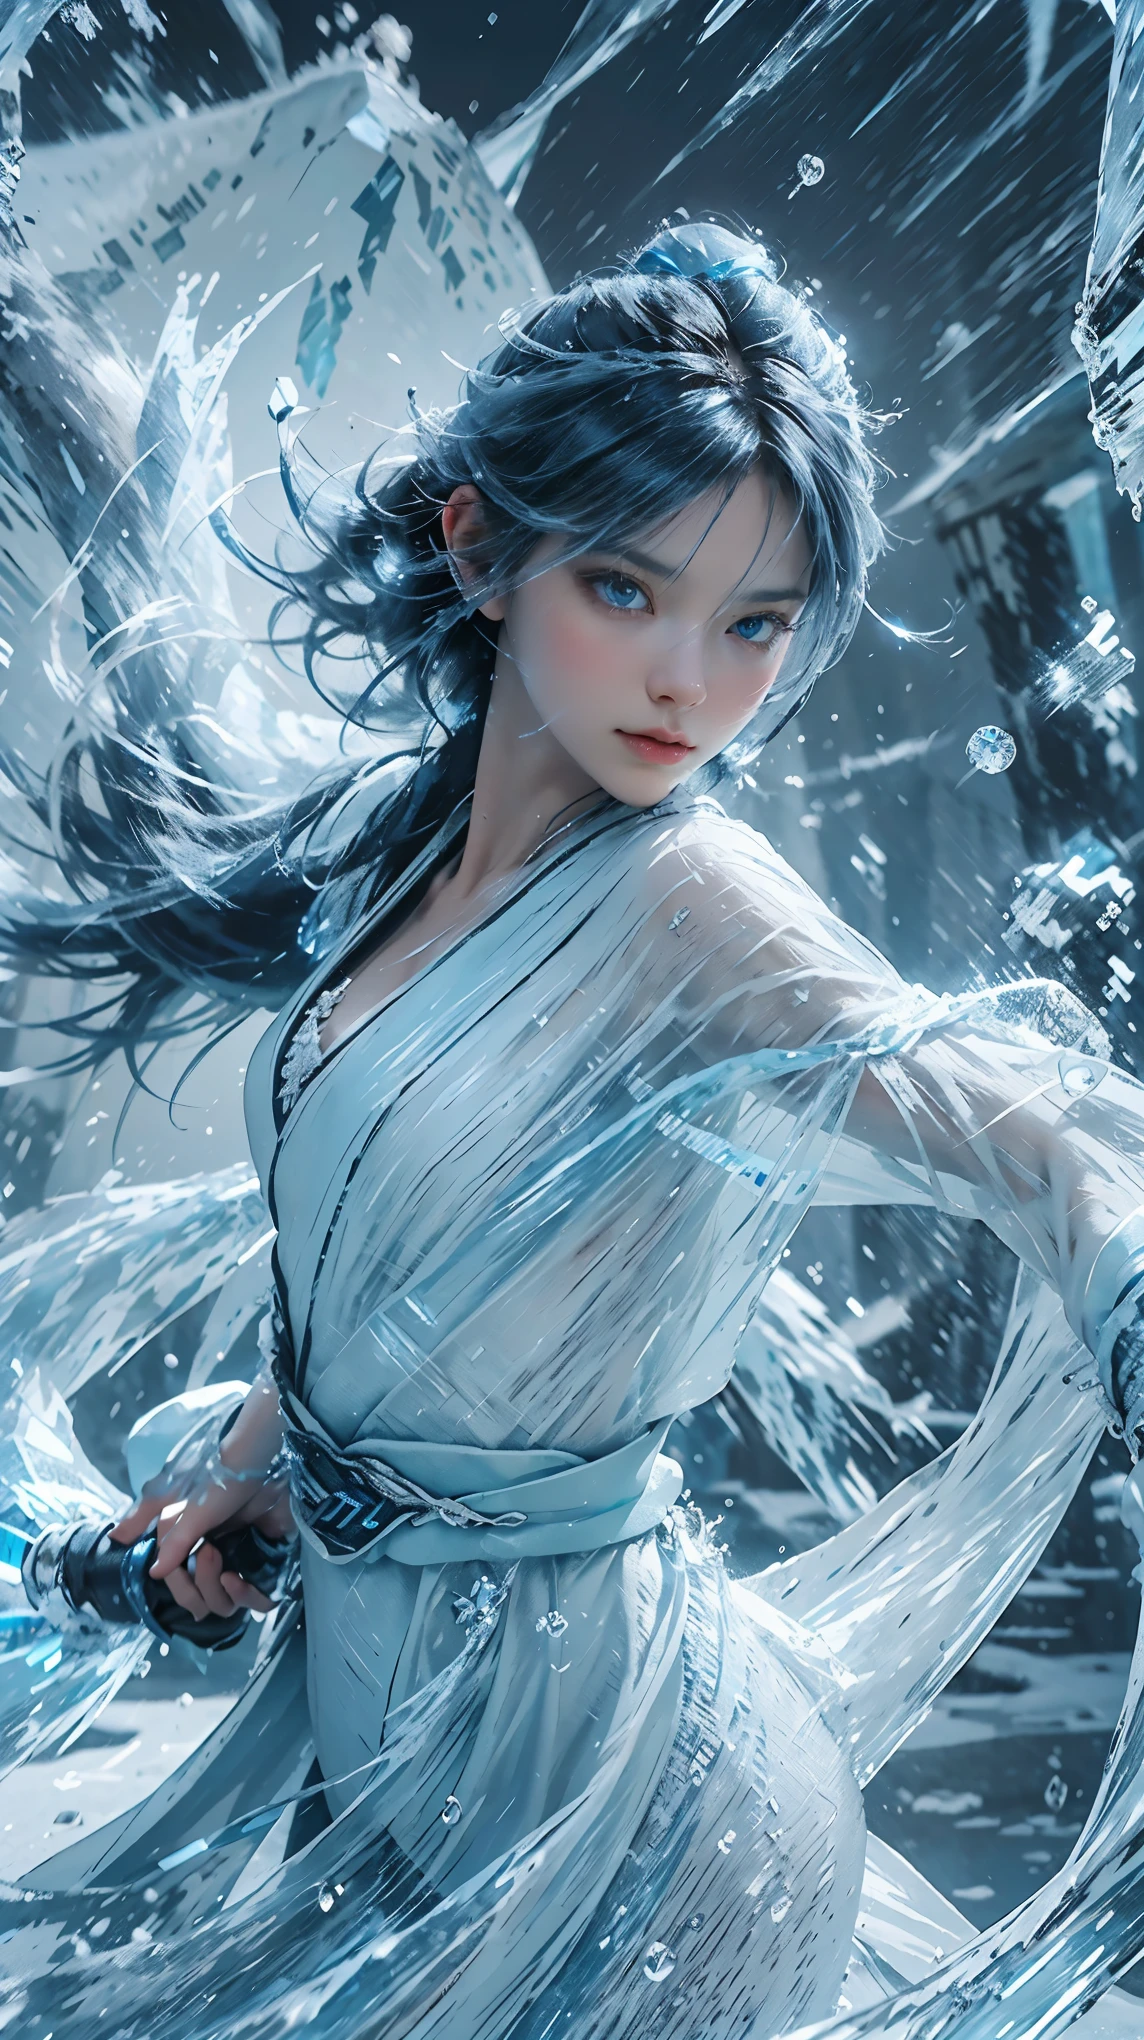 (((1 名女孩)))，皇水，魔术师，（寬鬆連身裙：1.5），（完美的臉部特徵：1.4），（藍色絲綢長袍），（神秘的魔法阵：1.2），藍色發光，（冰霜之翼），(((強大的冰系魔法)))，(((冰柱)))，高耸于風景之上，藍光冷光，(((冰暴)))，風，((飛雪冰雪))，驚人的結果，,最好的品質,傑作,超高解析度,詳細的,錯綜複雜的細節,8k分辨率,8KUCG壁紙,高動態範圍,水蓝,魔法陣,戲院級燈光效果,明暗對比，光線追蹤、NVIDIA RTX